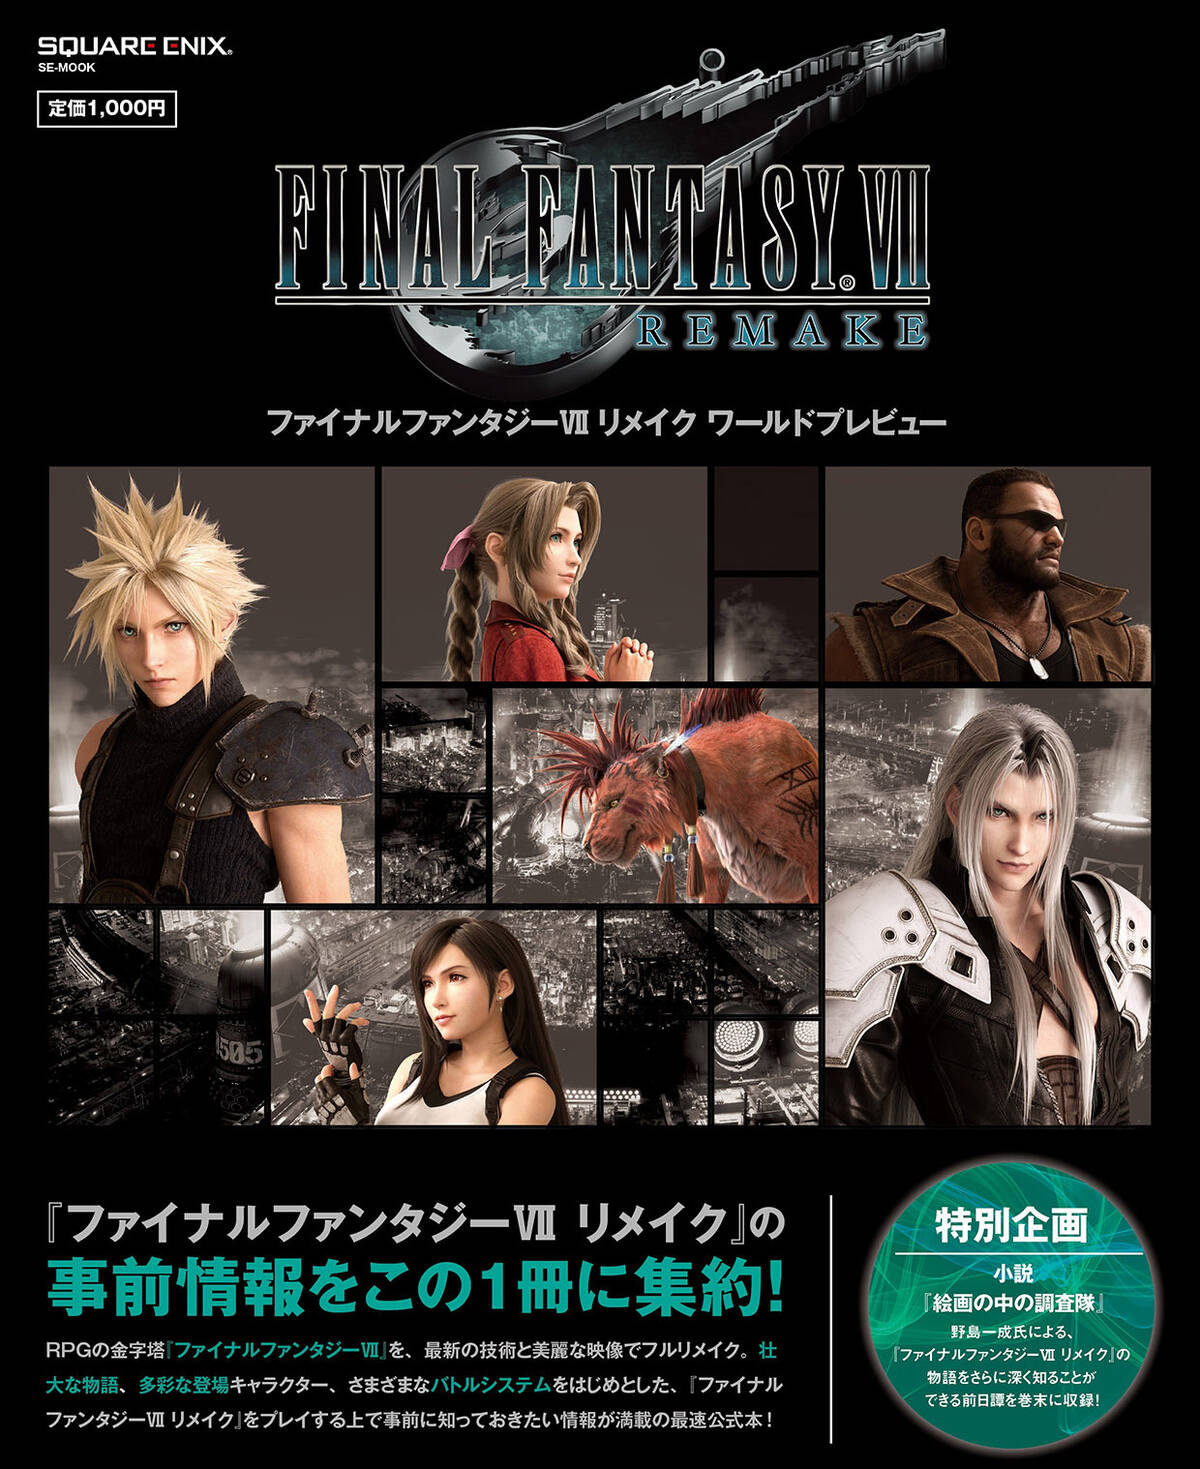 プレゼント 星を救う準備を始めよう Final Fantasy Vii Remake の発売に備えた1冊 ファイナルファンタジーvii リメイク ワールドプレビュー が3月19日 木 発売 アキバ総研